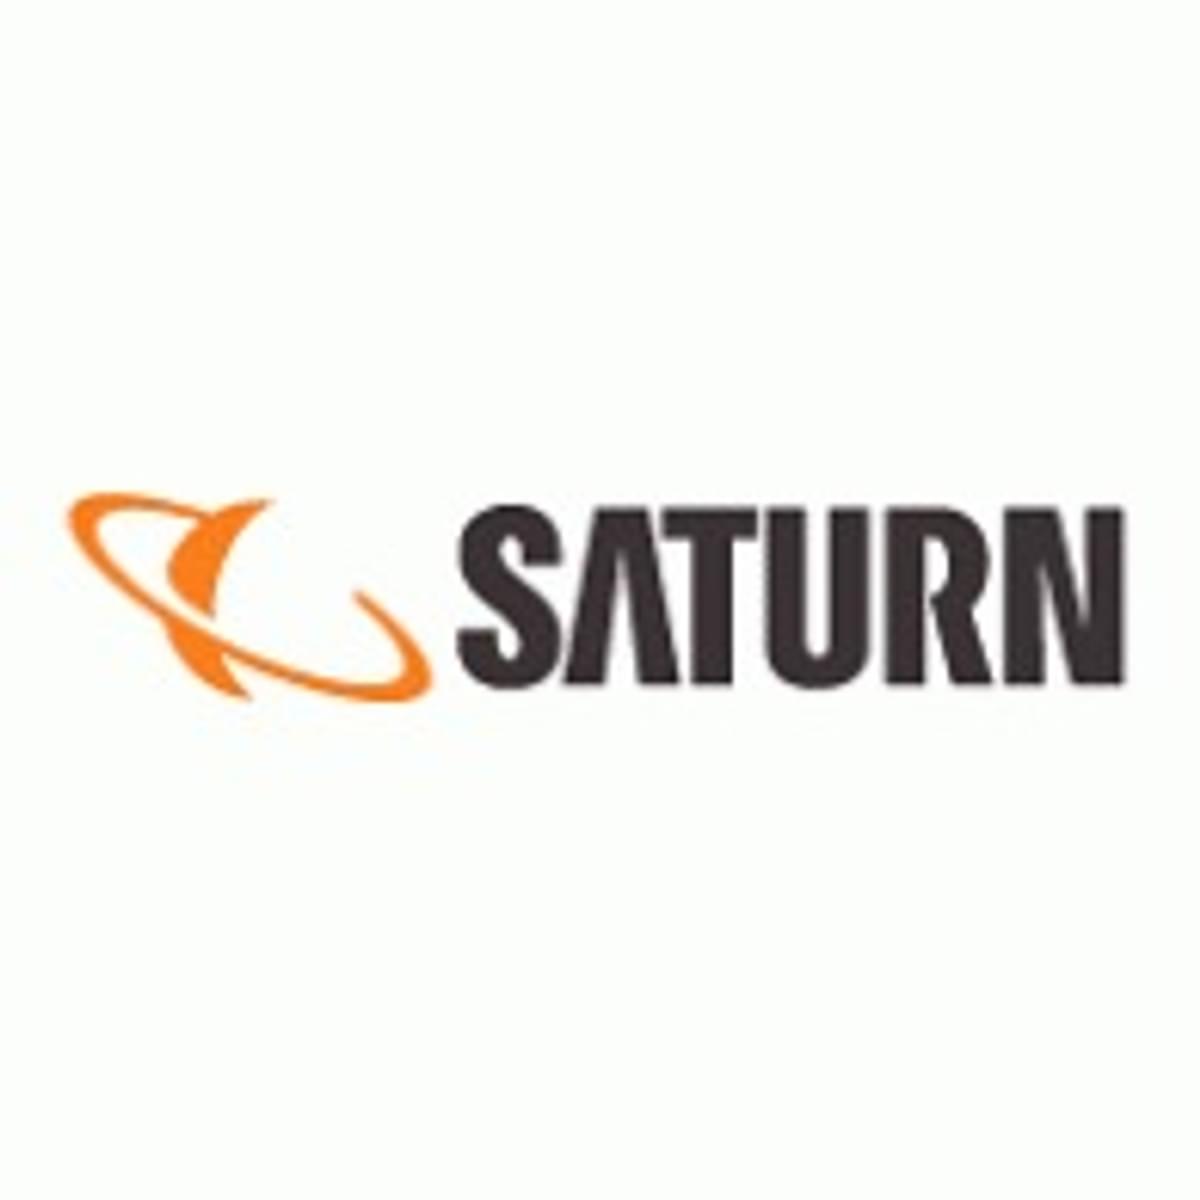 Saturn opent winkel zonder kassa image